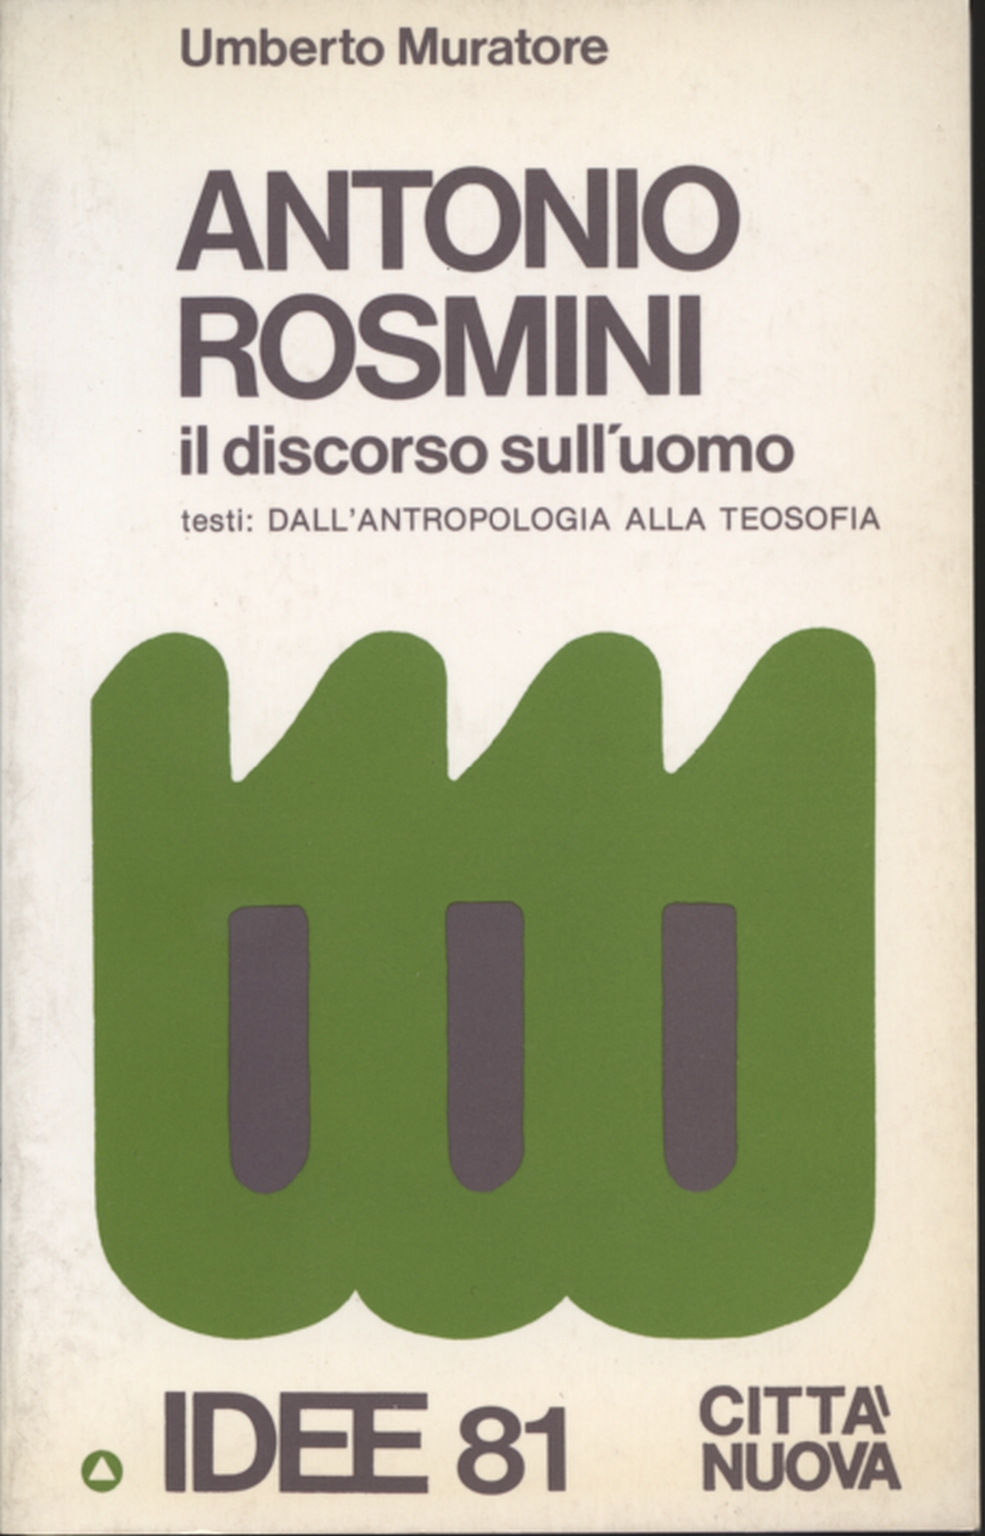 Antonio Rosmini, Umberto Maurer